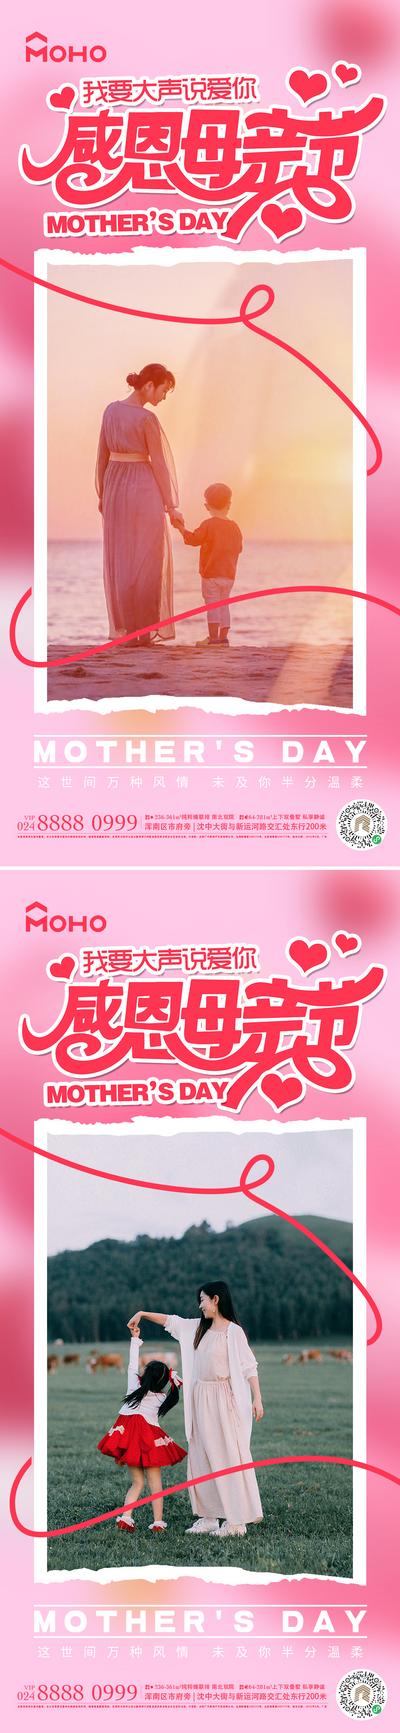 南门网 广告 海报 节日 母亲节 母亲 母女 母子 爱 母爱 感恩 拥抱 呵护 陪伴 鲜花 送花 花